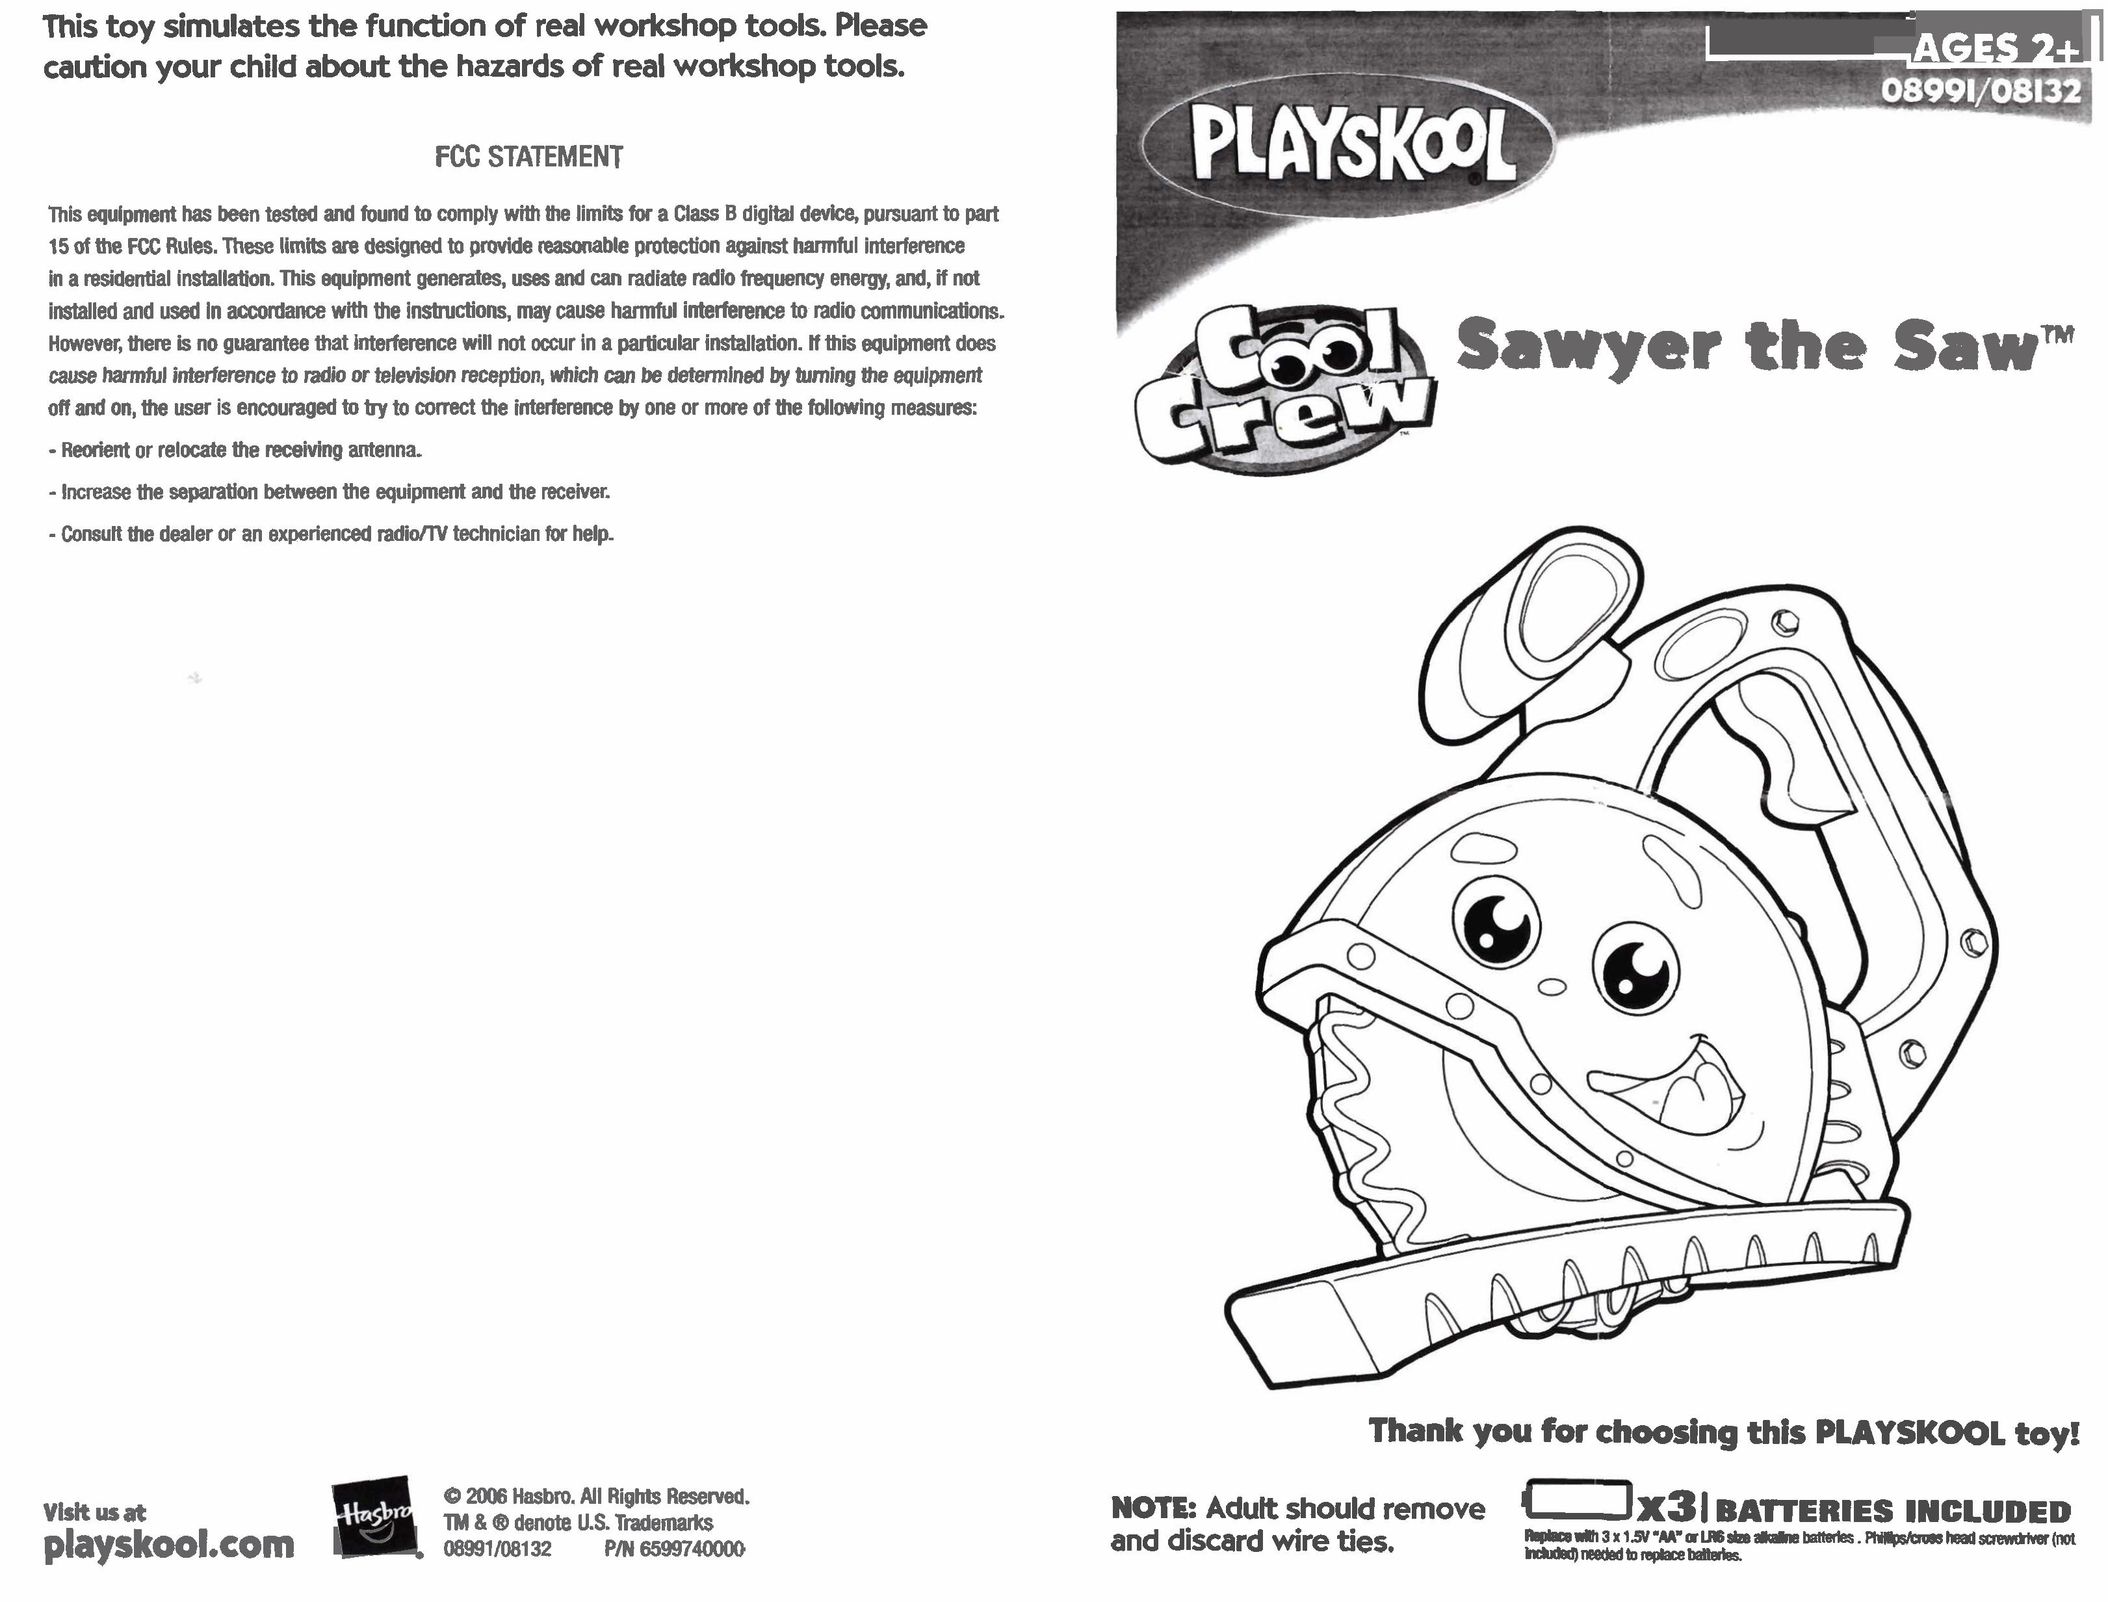 Playskool 08991/08132 Games User Manual